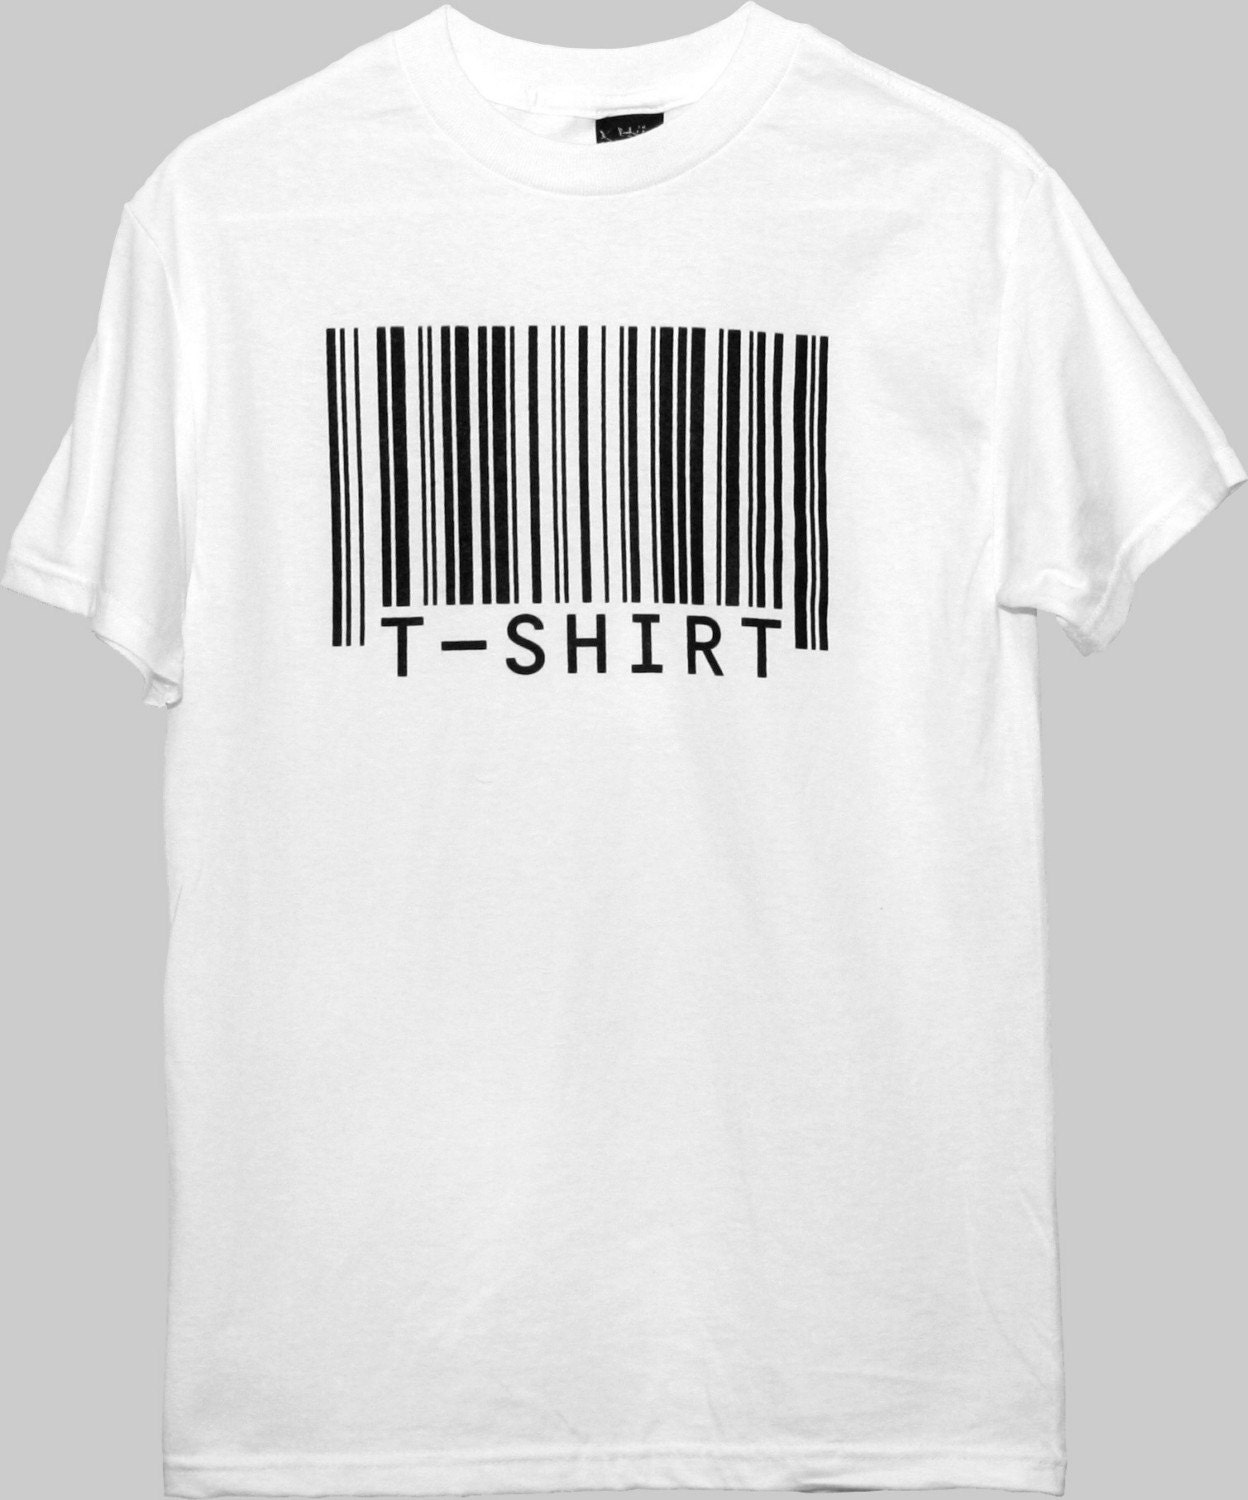 Barcode t-shirt Shirt 50% OFF 